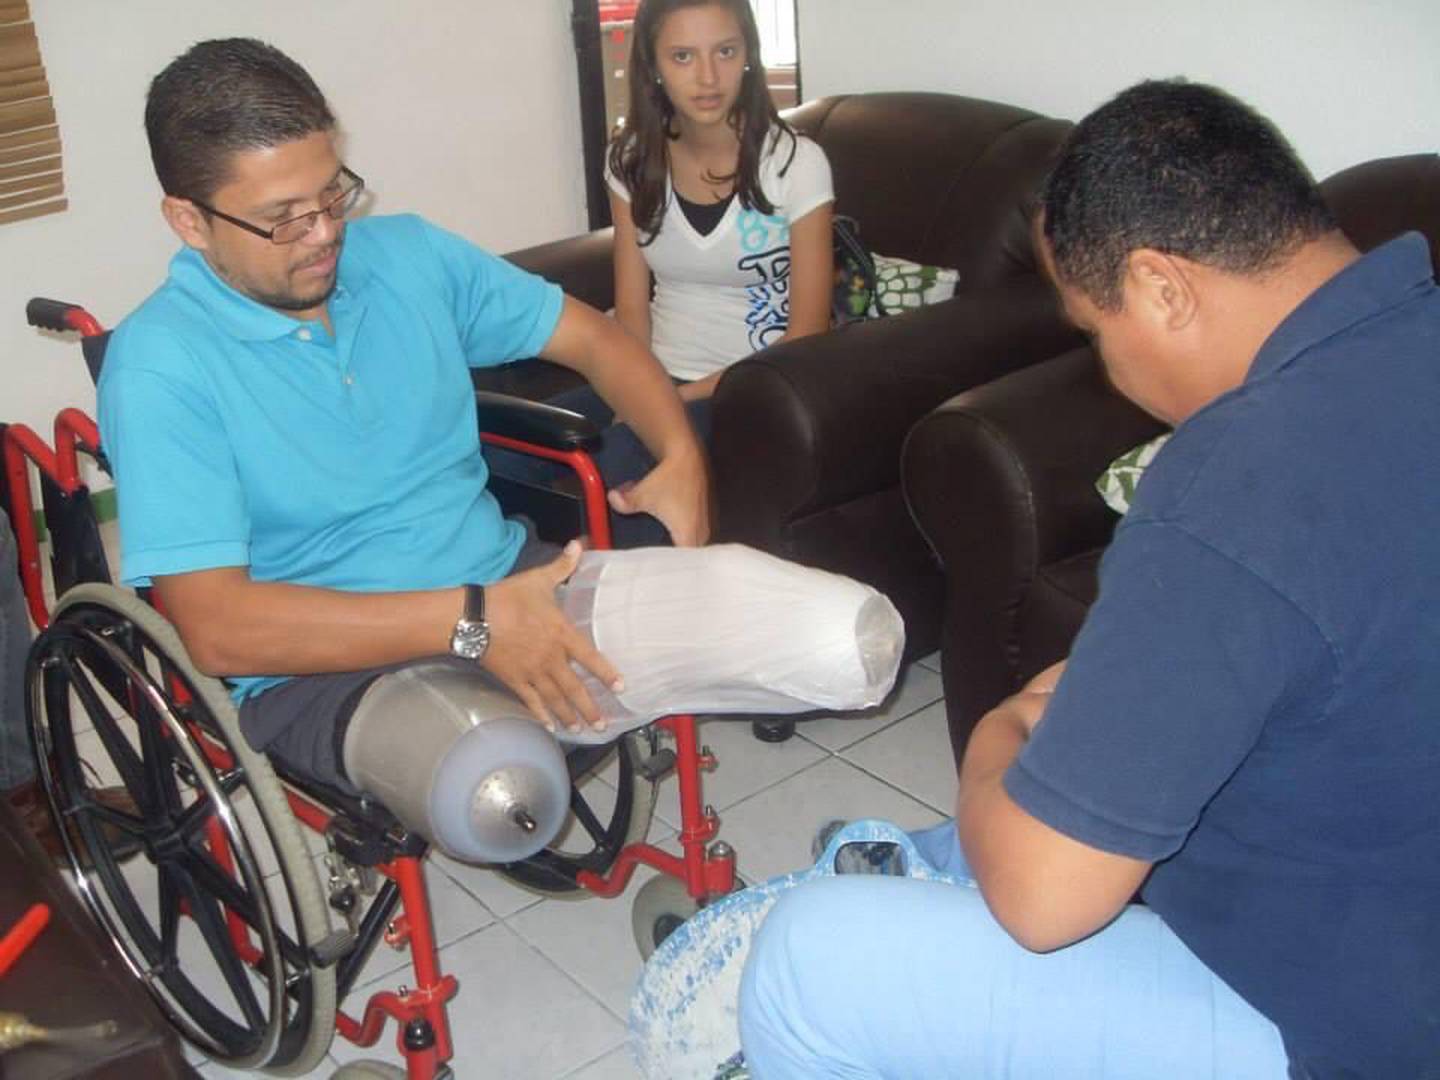 Alexander Fernández Vargas, sufrió un accidente de tránsito el 10 de diciembre del 2011 en Dominicalito por el que perdió sus dos piernas. Actualmente camina con prótesis, maneja carro y hasta es seleccionado nacional de voleibol sentado